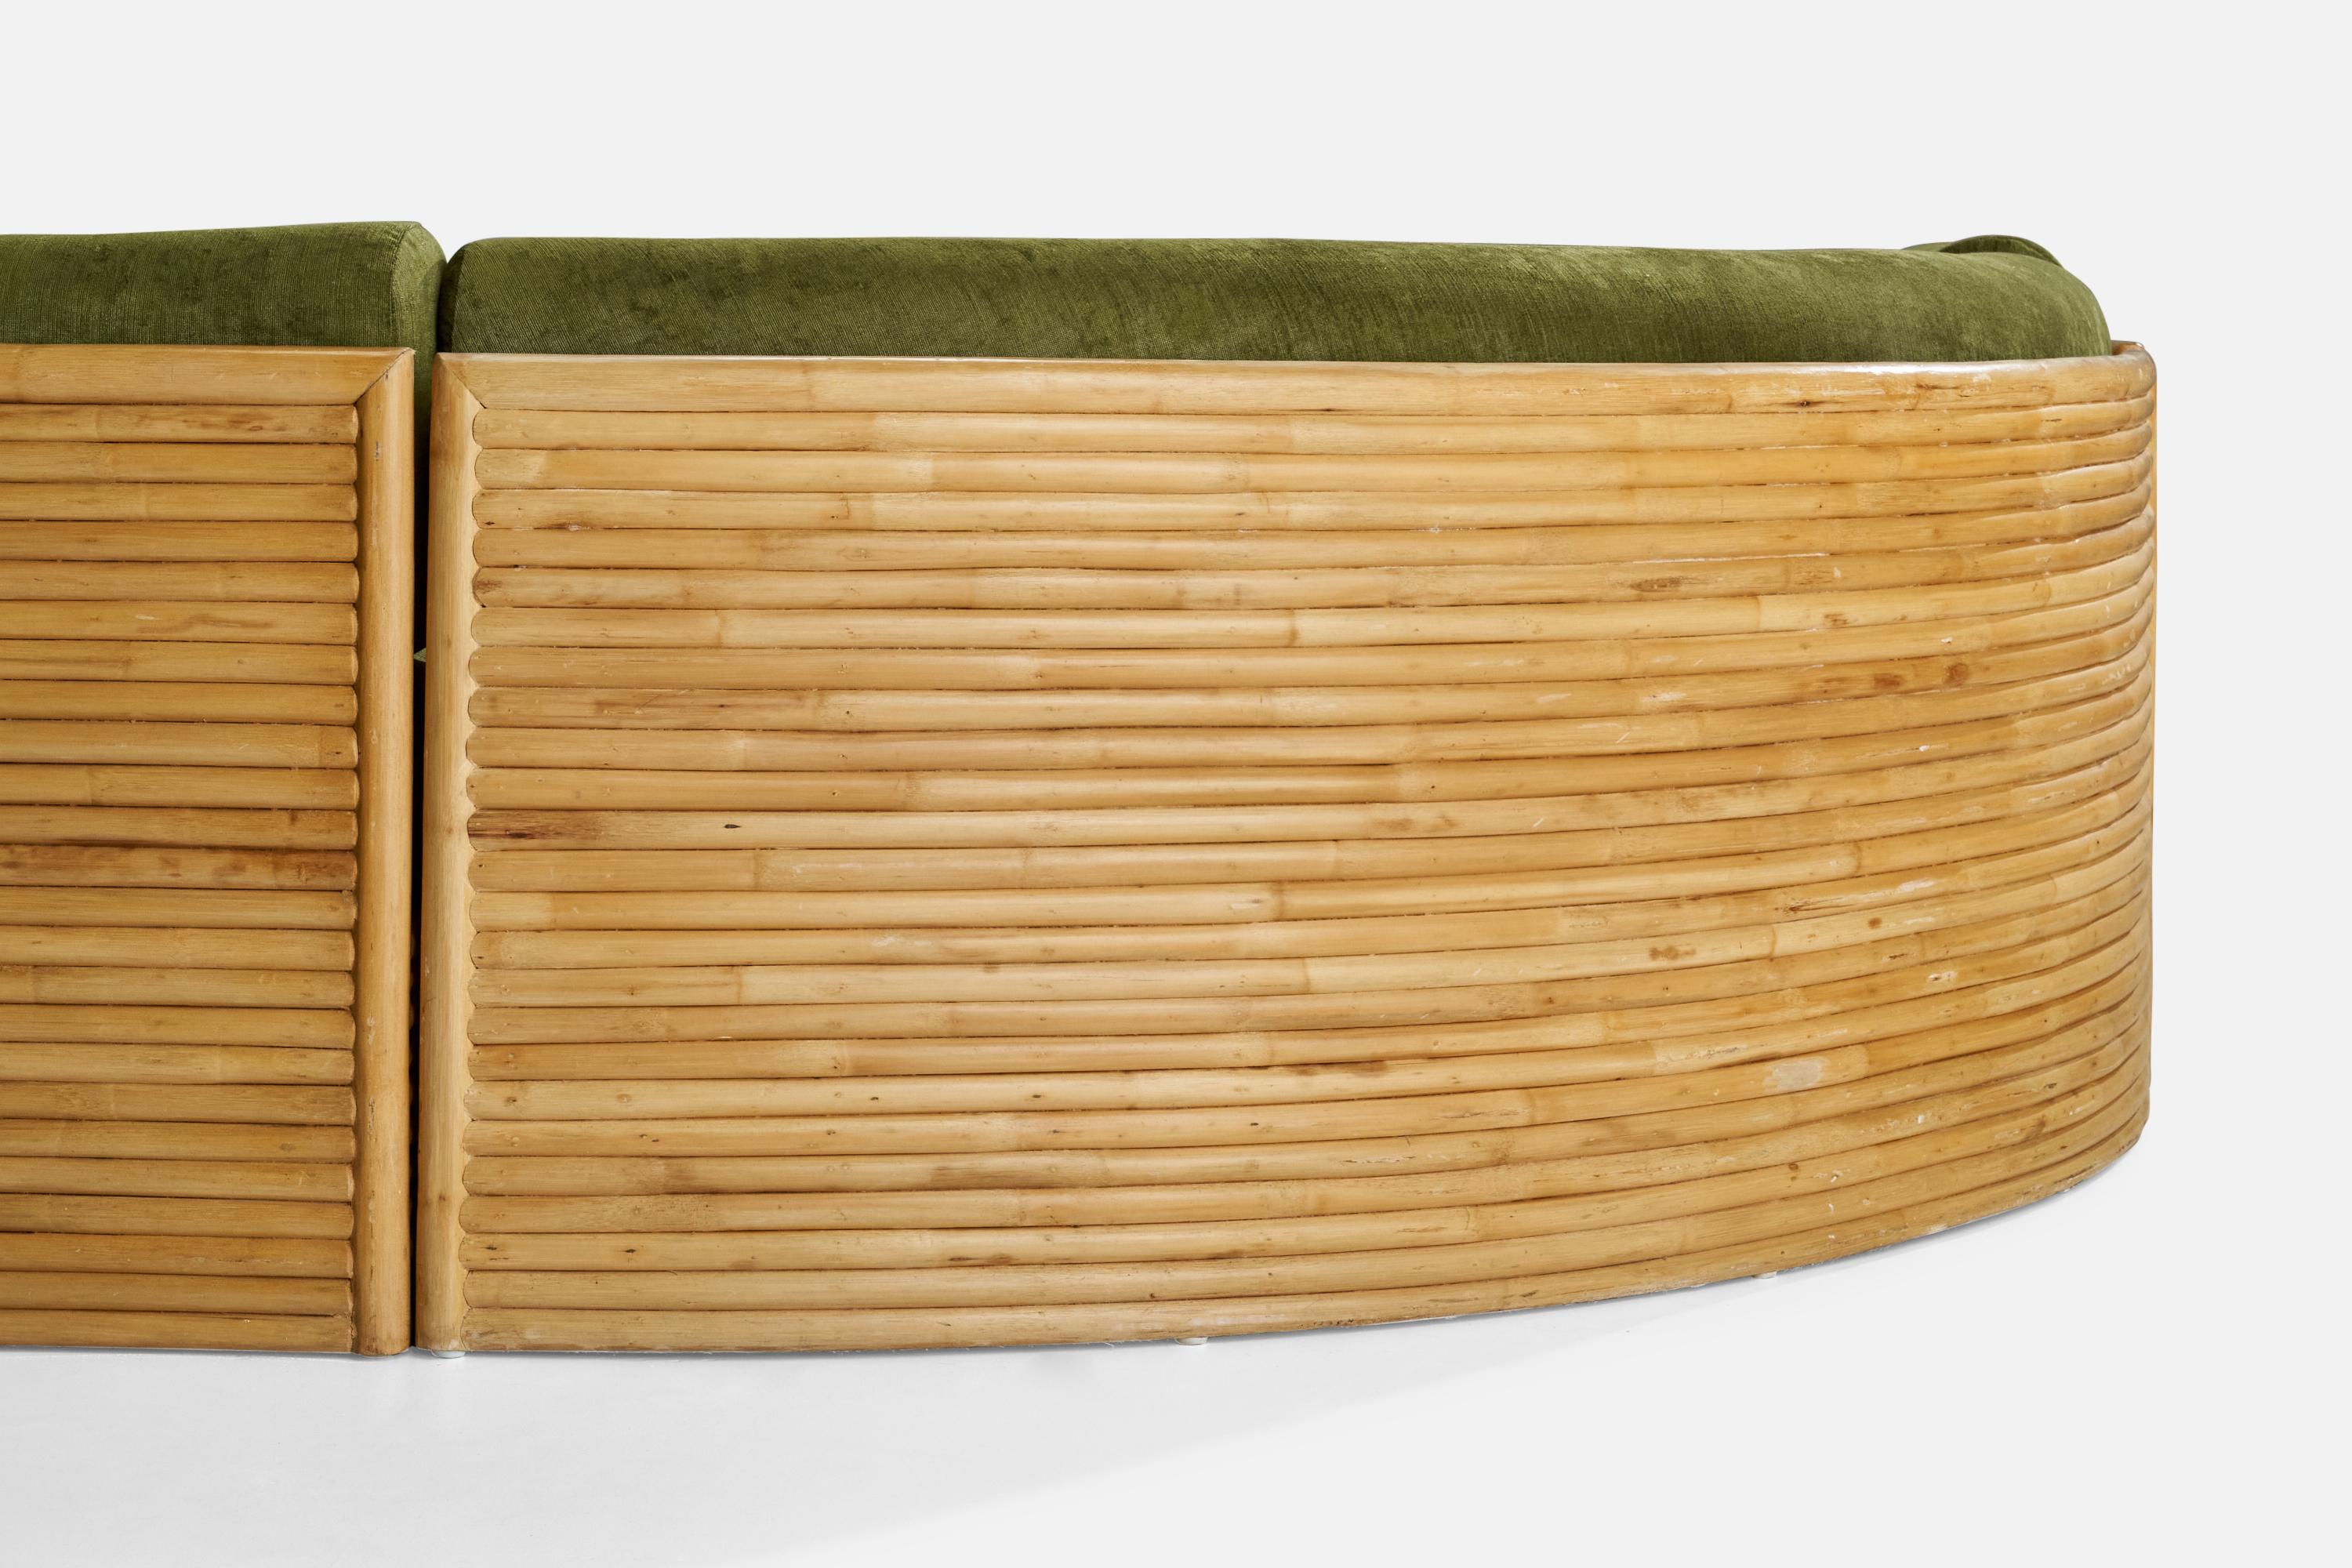 Fin du 20e siècle Directional Furniture, canapé sectionnel, bambou, velours, États-Unis, années 1970